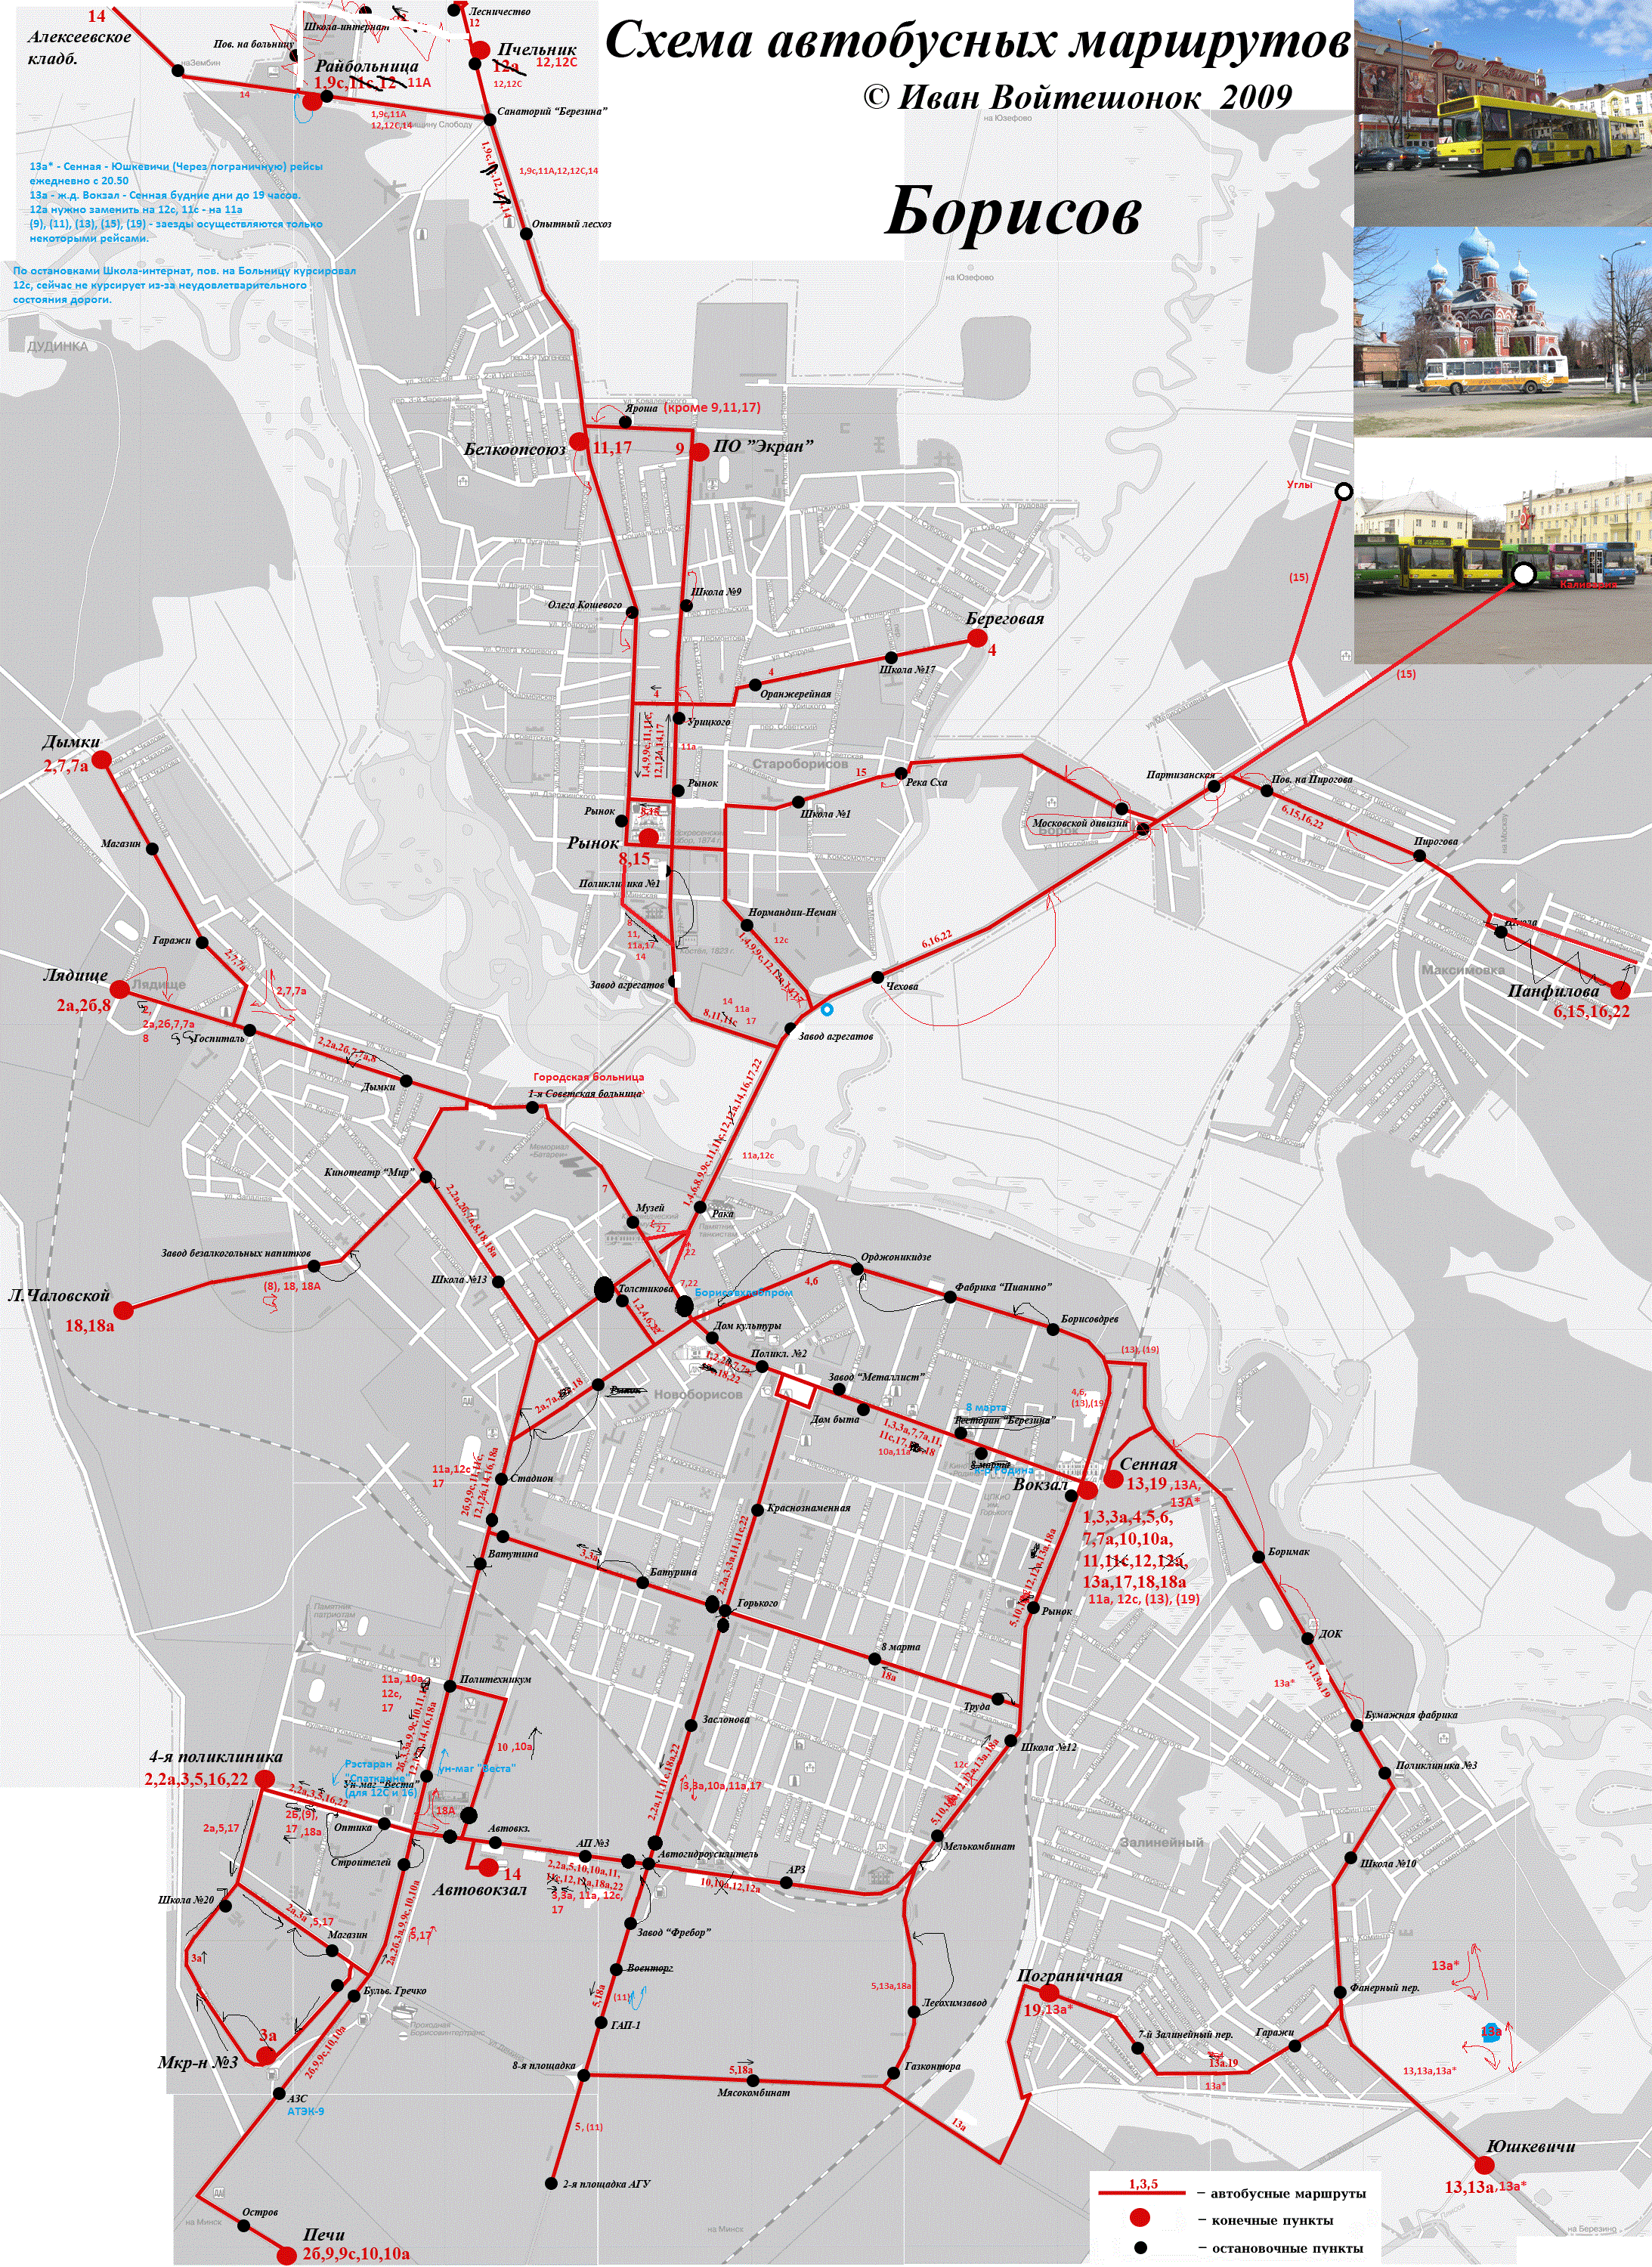 Маршрутка борисов расписание городских. Схемы маршрутов городского транспорта. Карта маршрутов городского транспорта. Схема городских автобусных маршрутов. Карта движения автобусов.